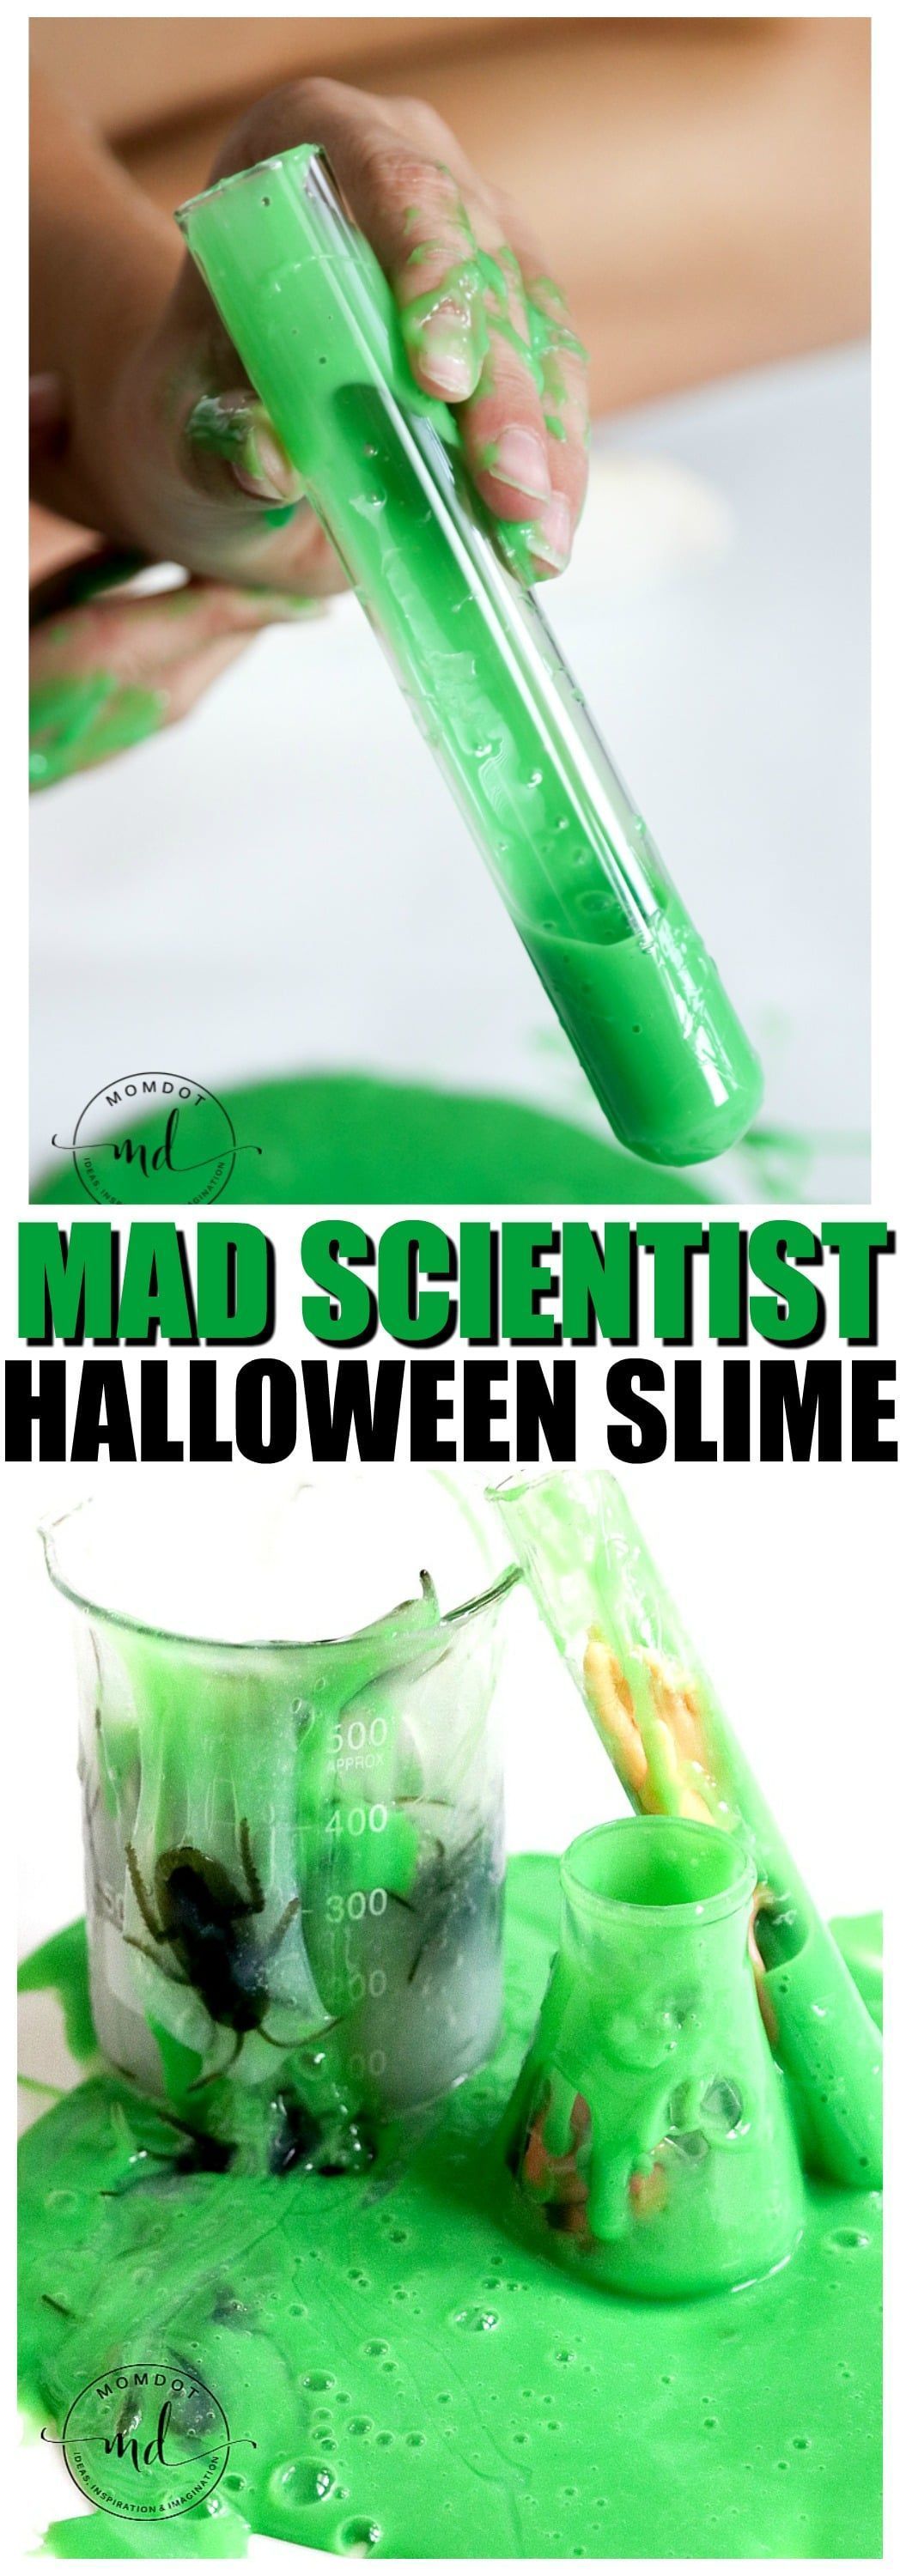 Mad Scientist Halloween Slime Tutorial - - Mad Scientist Halloween Slime Tutorial - -   19 diy Slime tutorial ideas